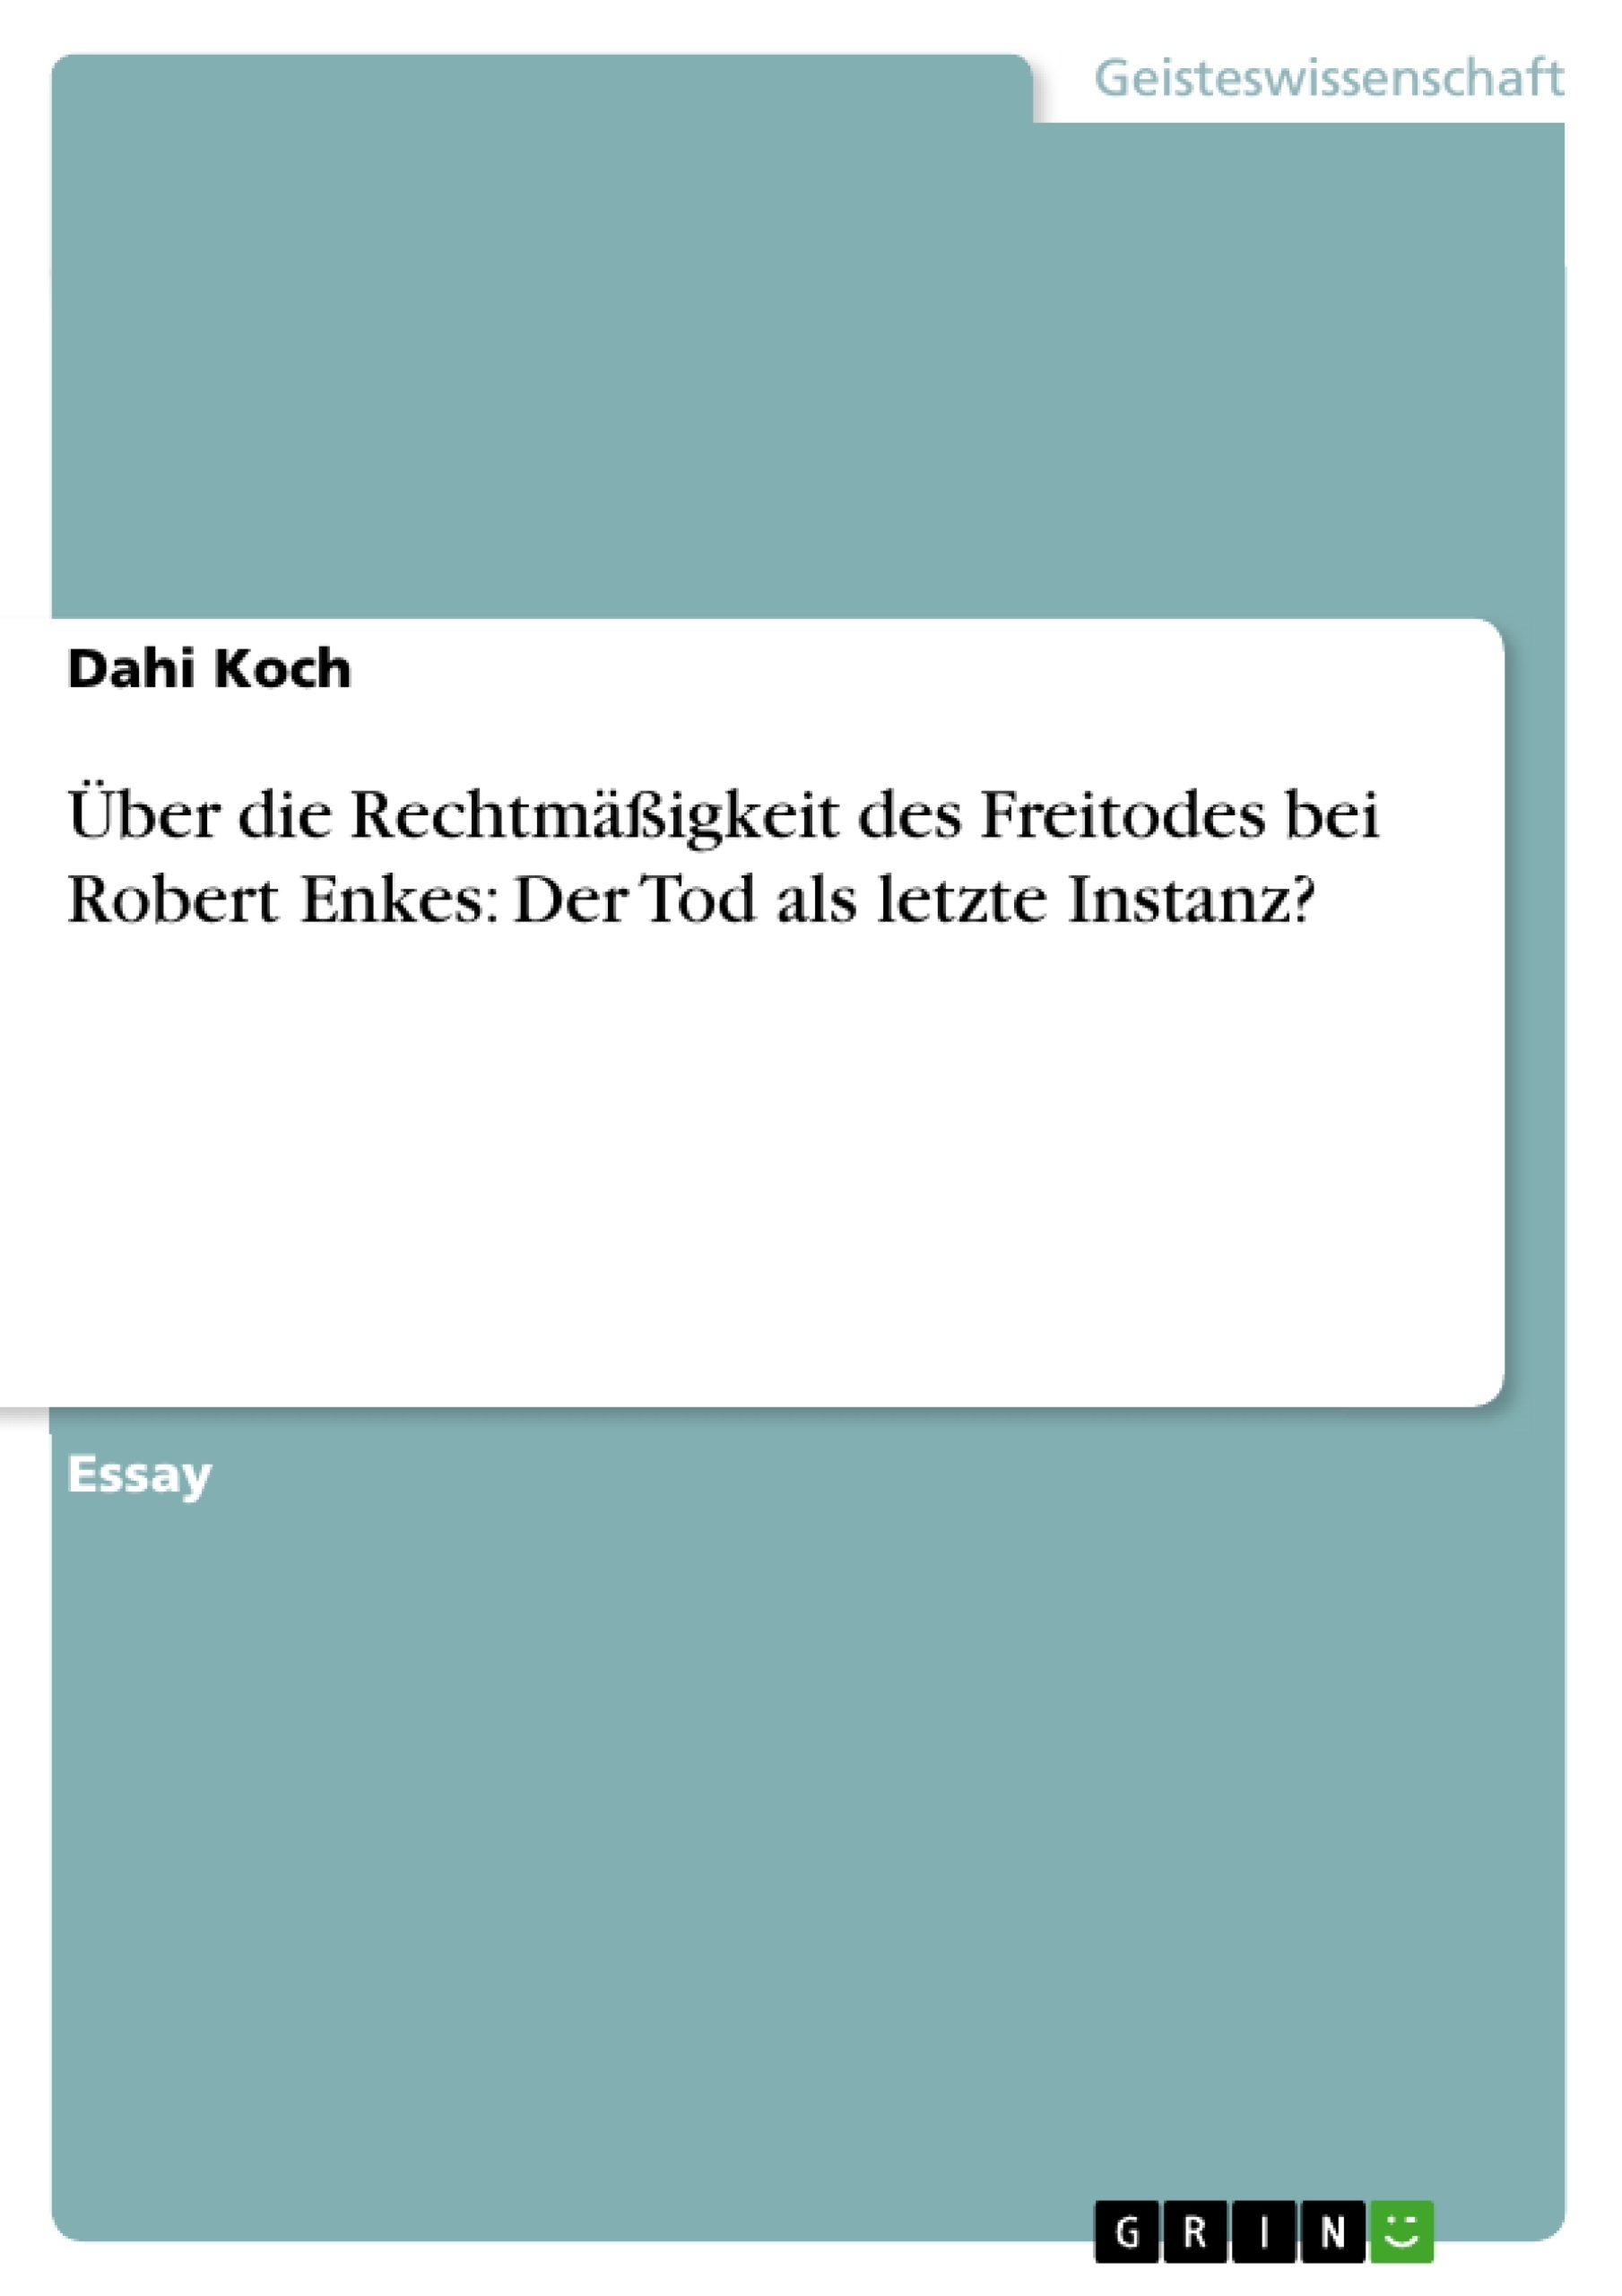 Title: Über die Rechtmäßigkeit des Freitodes bei Robert Enkes: Der Tod als letzte Instanz?